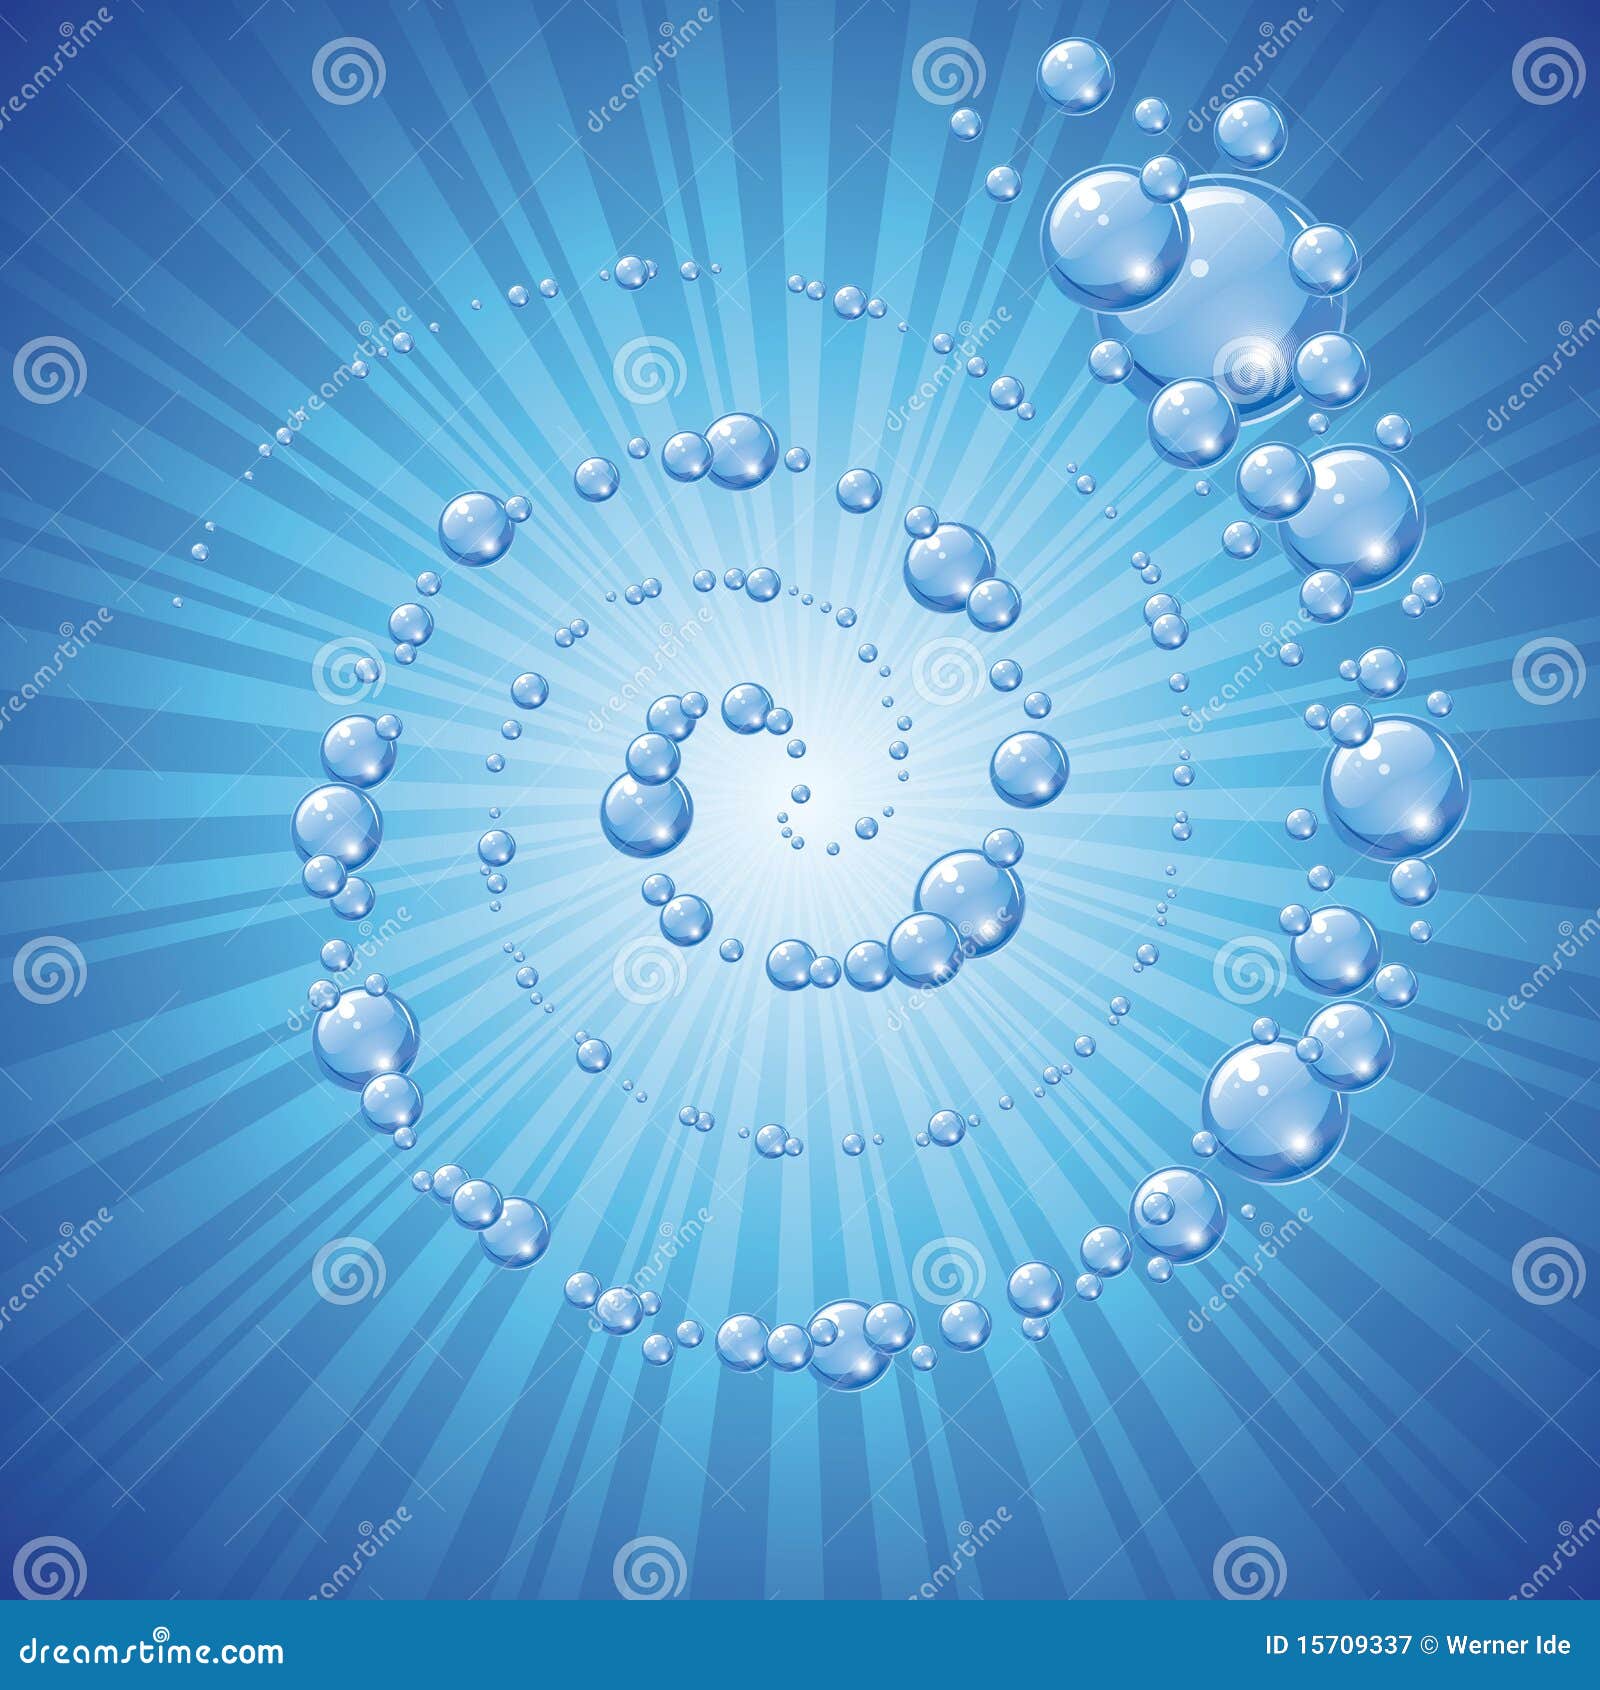 agua-azul-con-las-burbujas-15709337.jpg